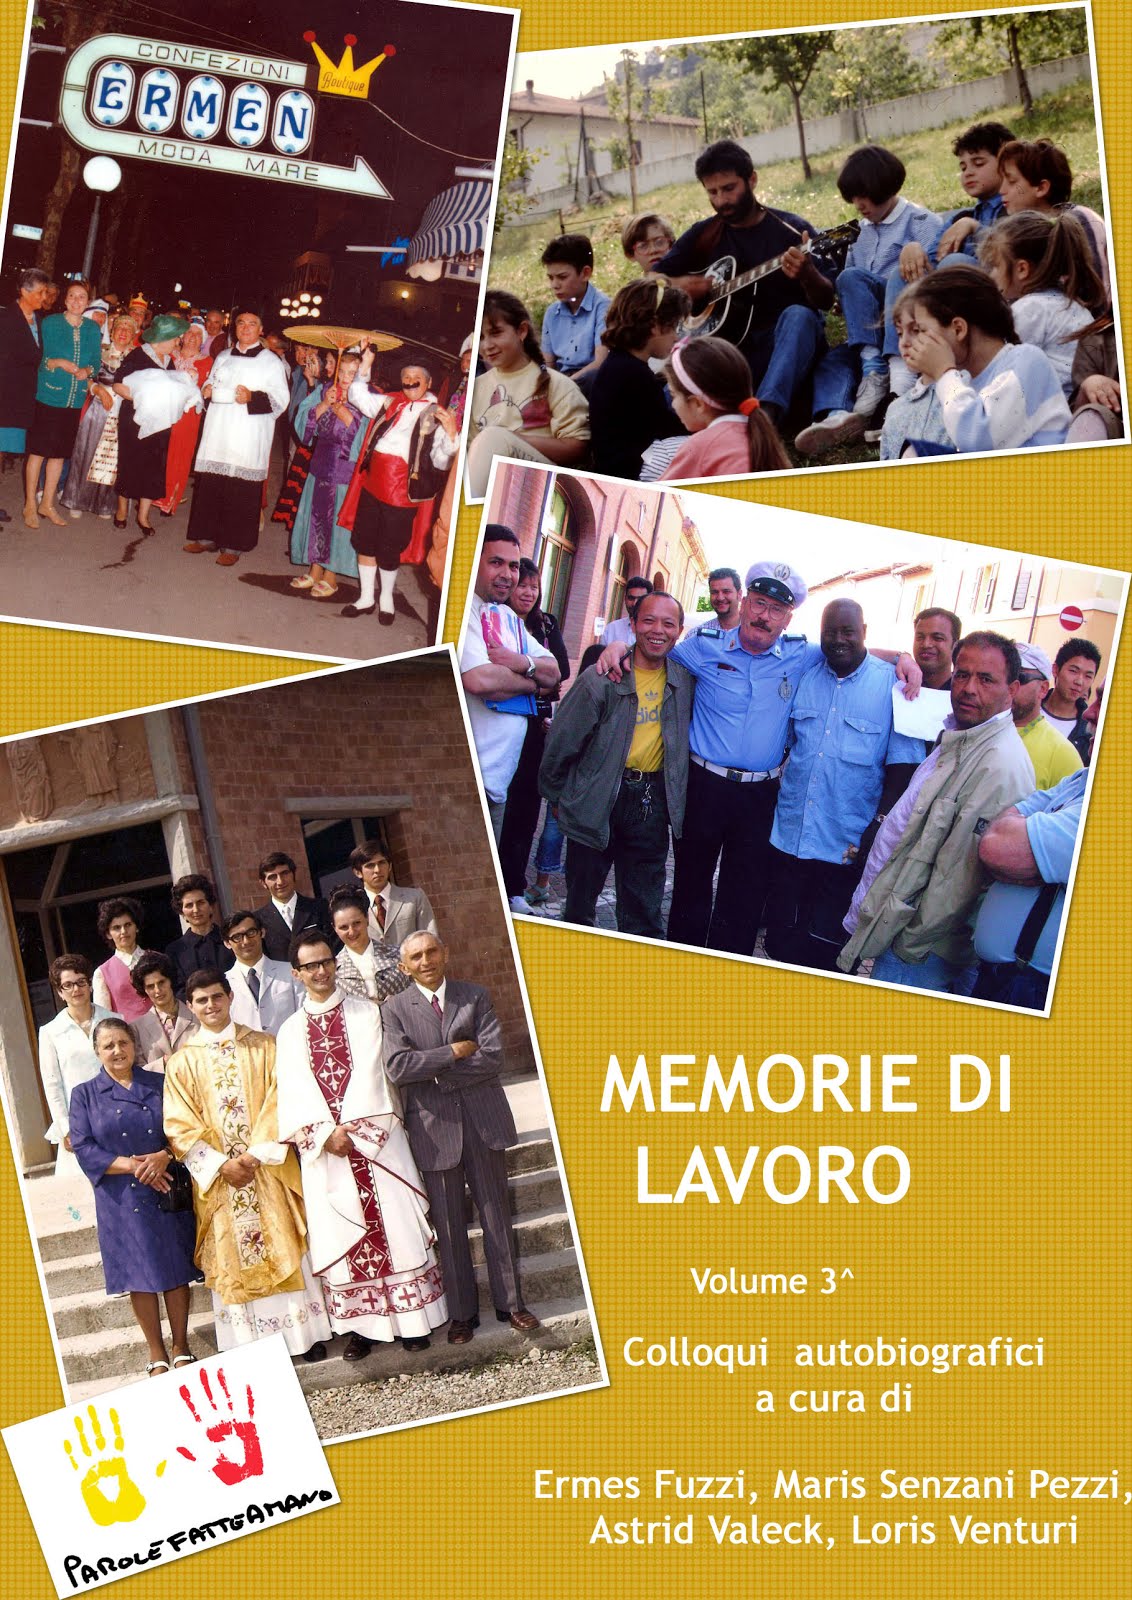 MEMORIE DI LAVORO, vol.3°